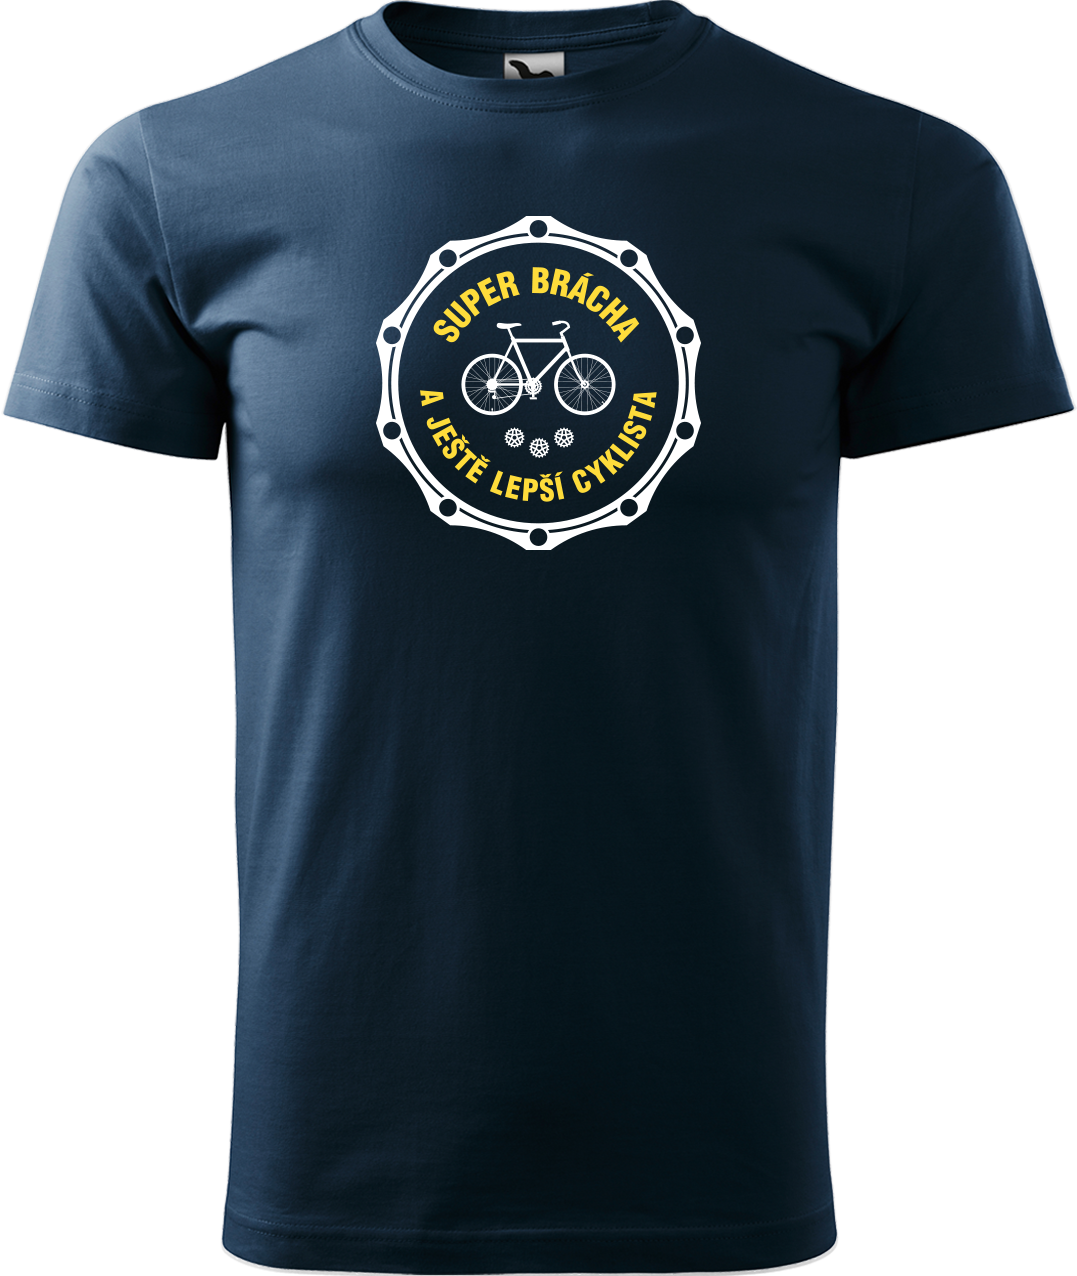 Pánské tričko pro cyklistu - Super brácha a ještě lepší cyklista Velikost: 4XL, Barva: Námořní modrá (02)